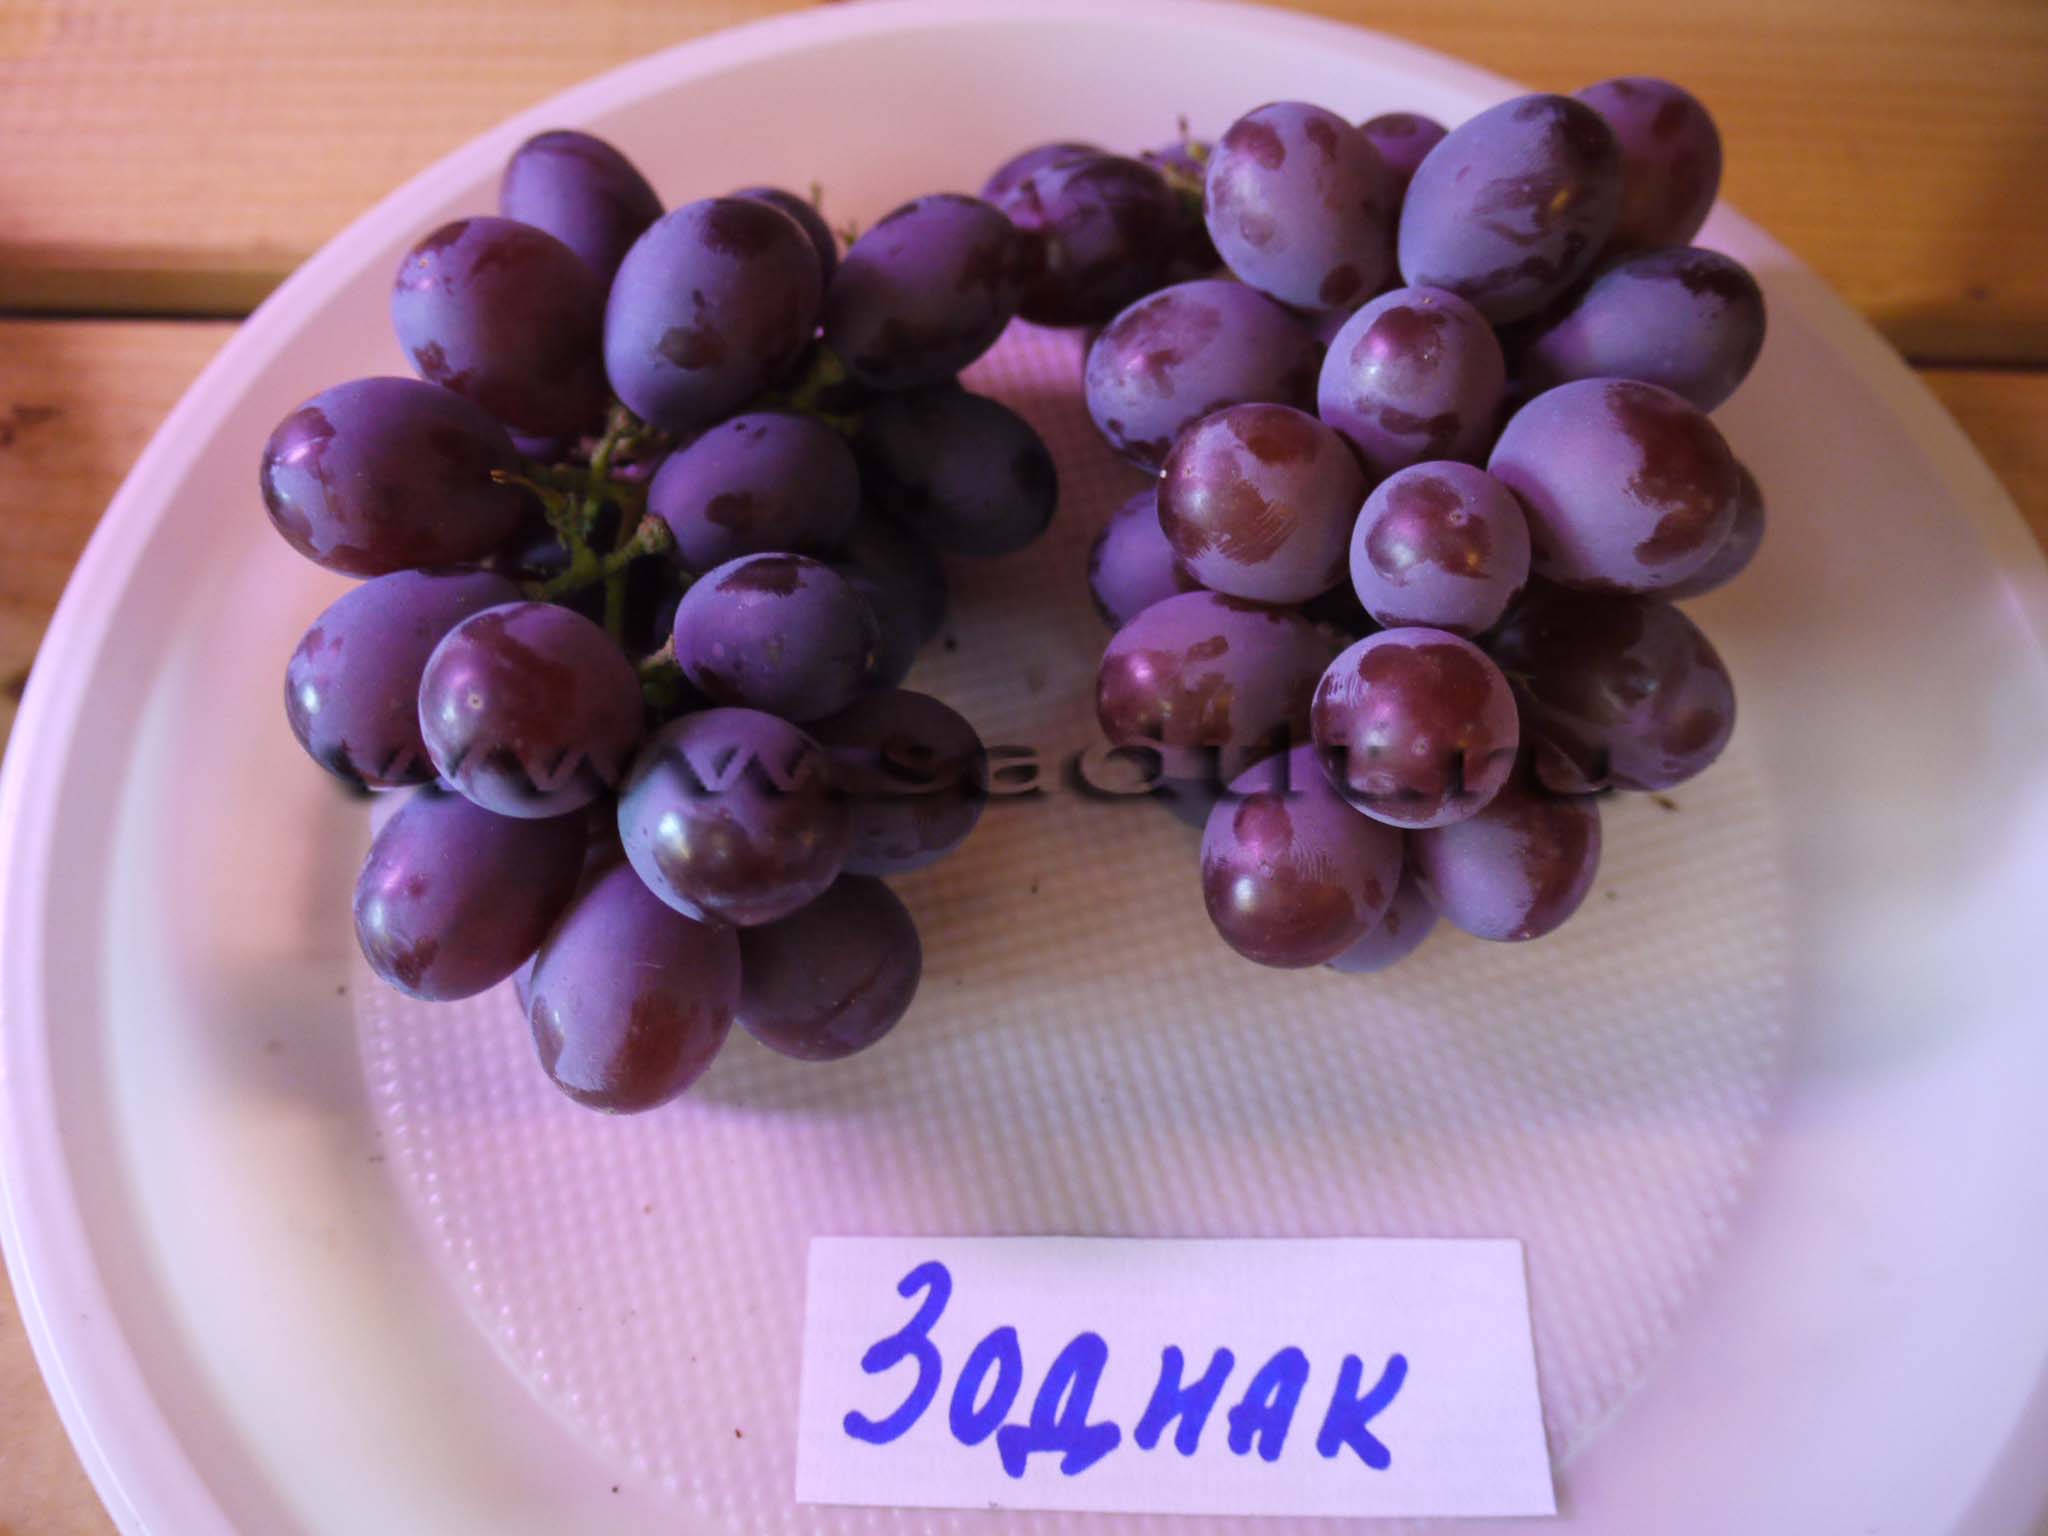 Сорт винограда зодиак, купить виноград, саженцы винограда, тольятти